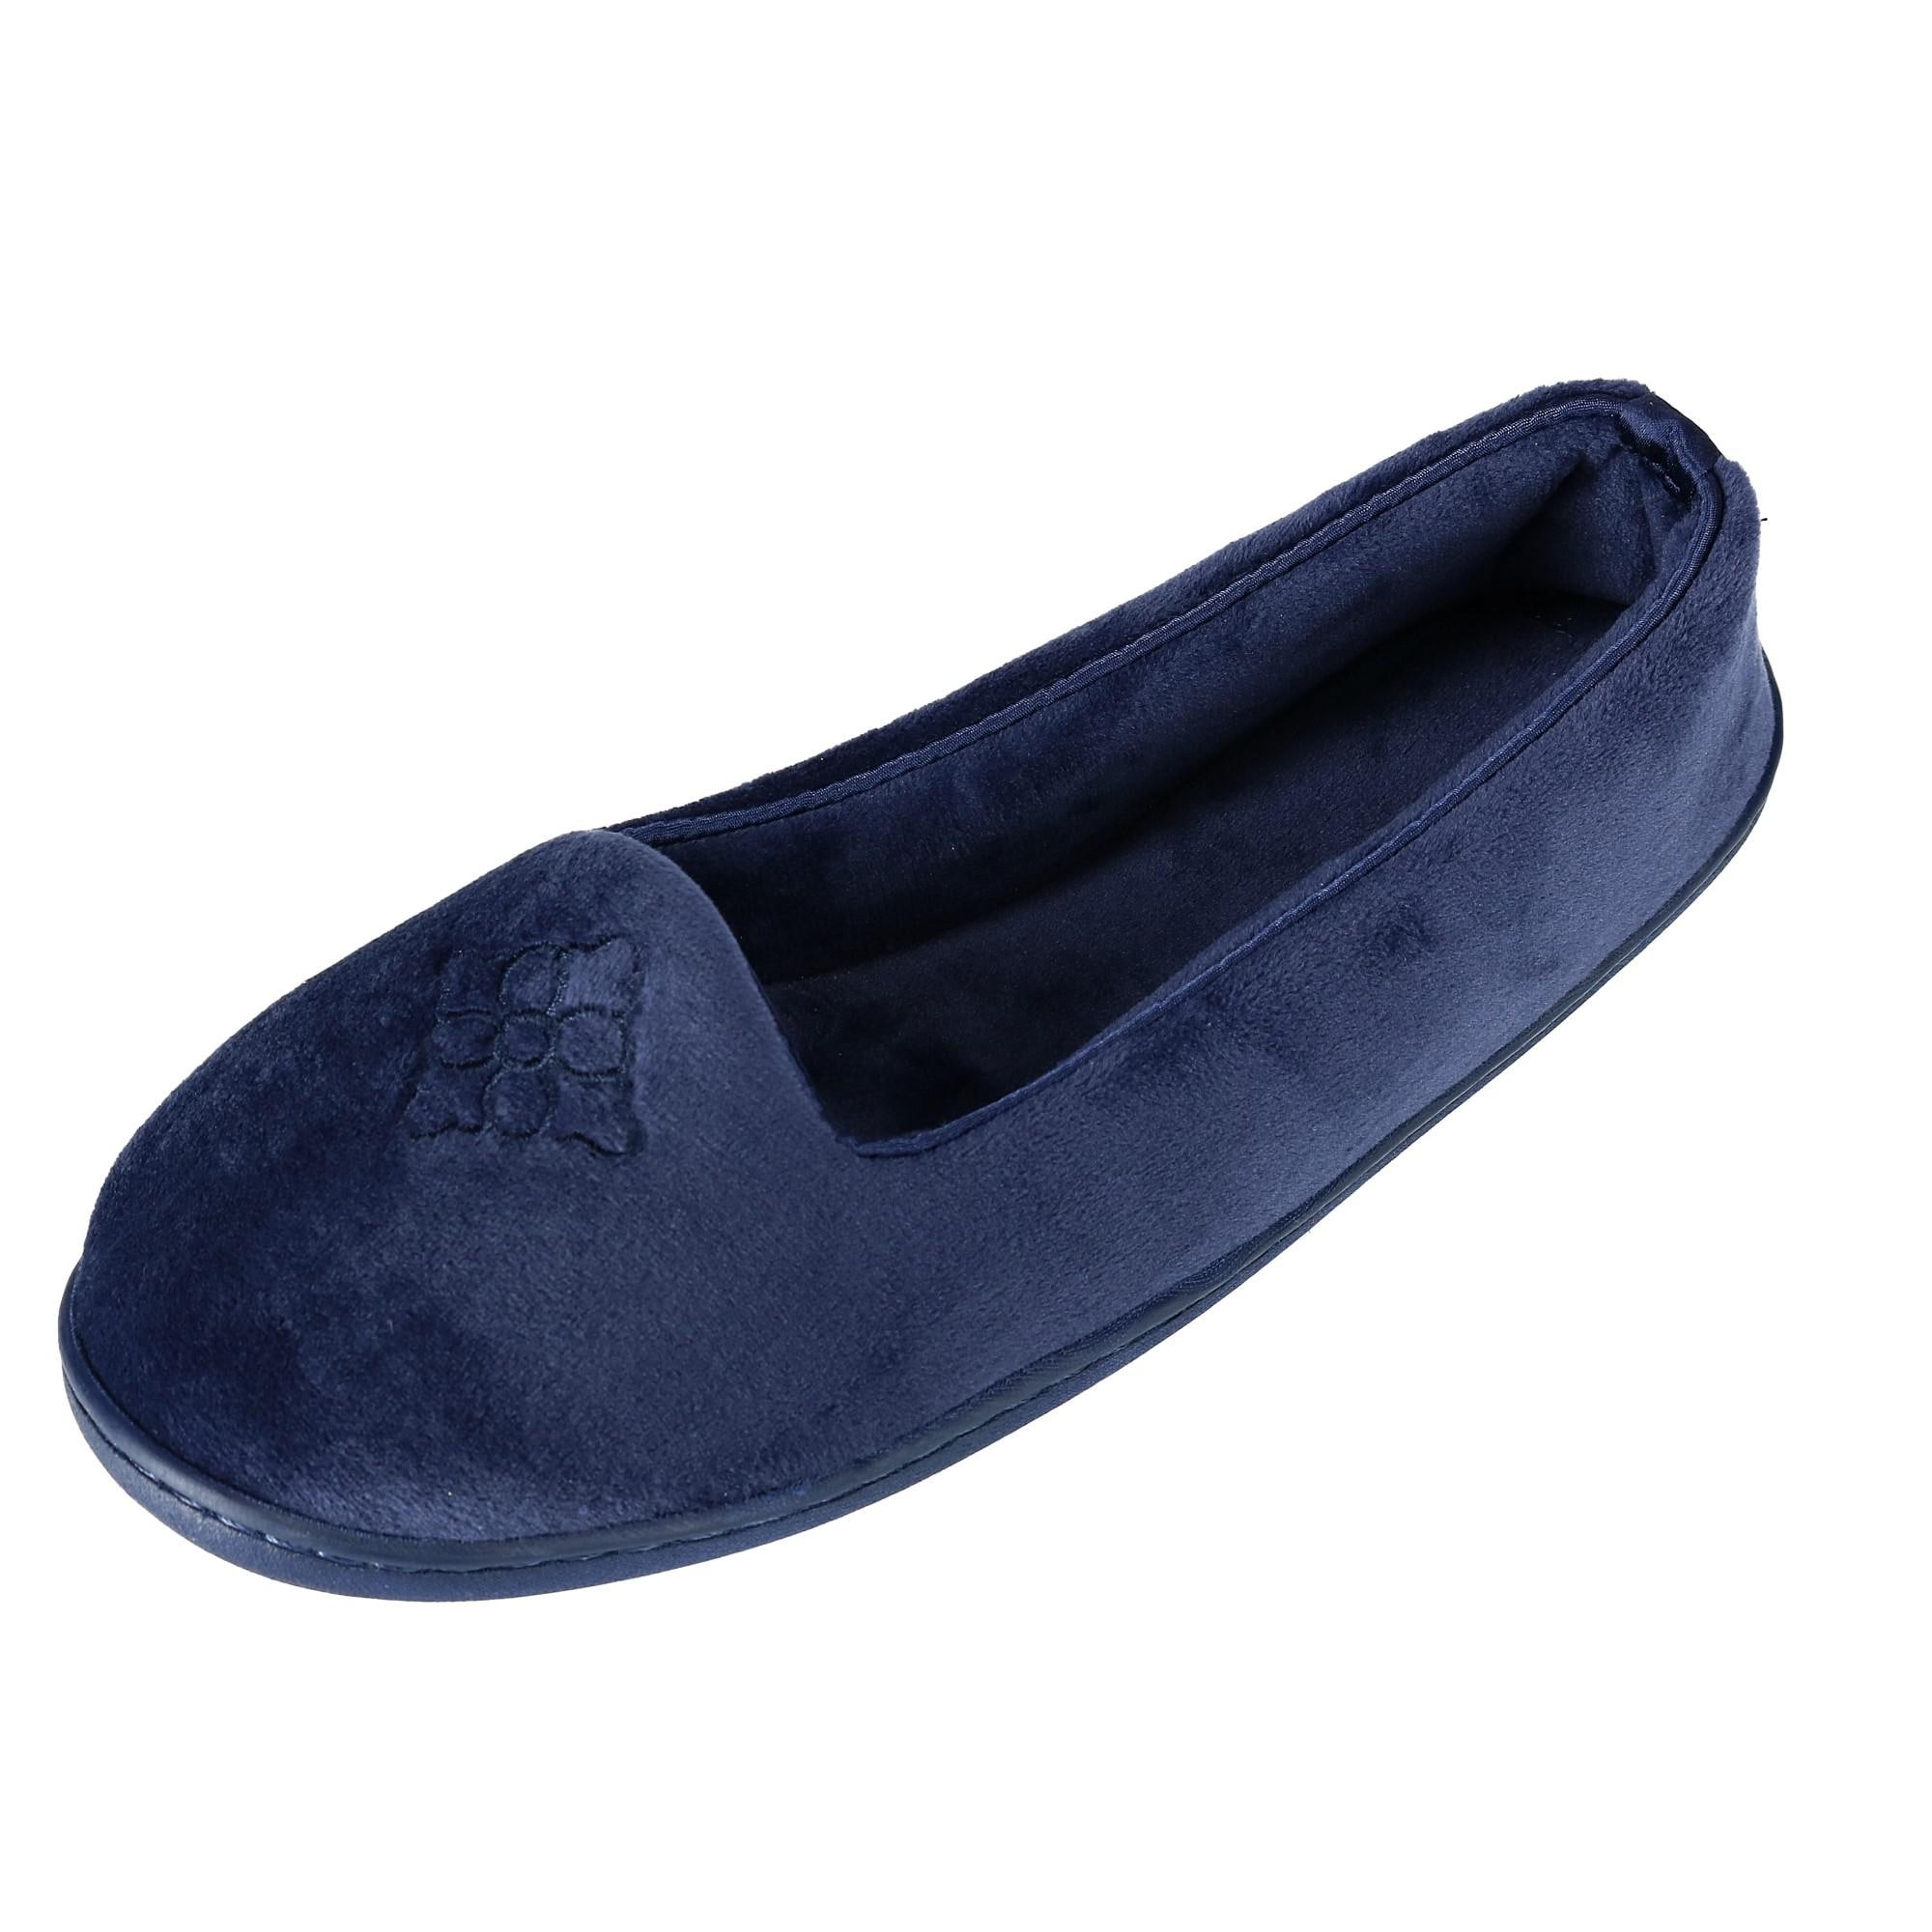 dearfoam slippers canada